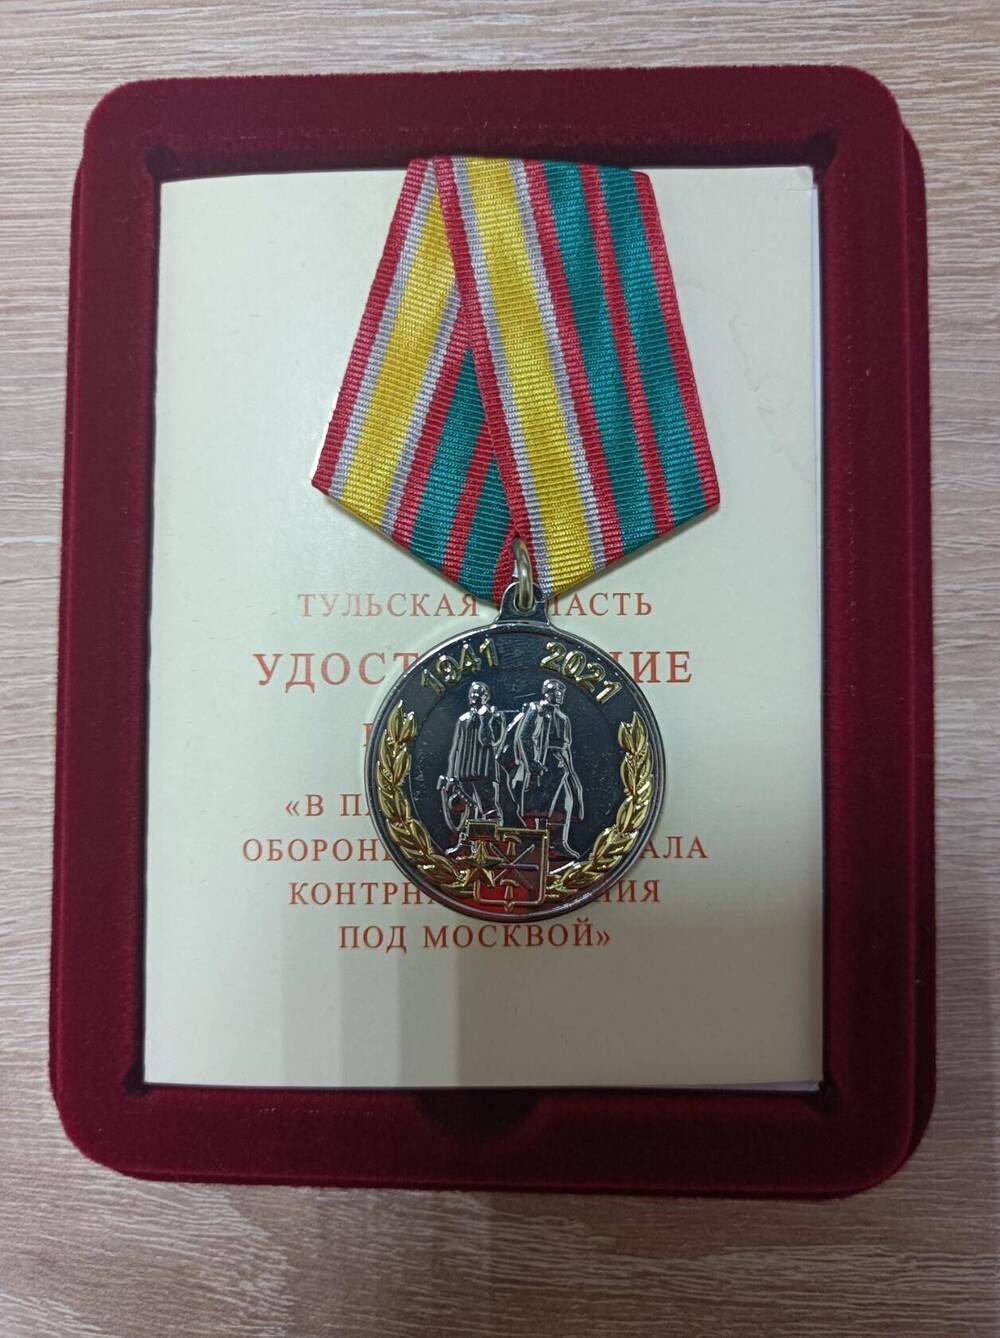 Медаль  В память 80-летия обороны Тулы и начала контрнаступления под Москвой.Зайцевой Милицы Федоровны от 18.12.2020 года № 119-3ТО.В  футляре с удостоверением.